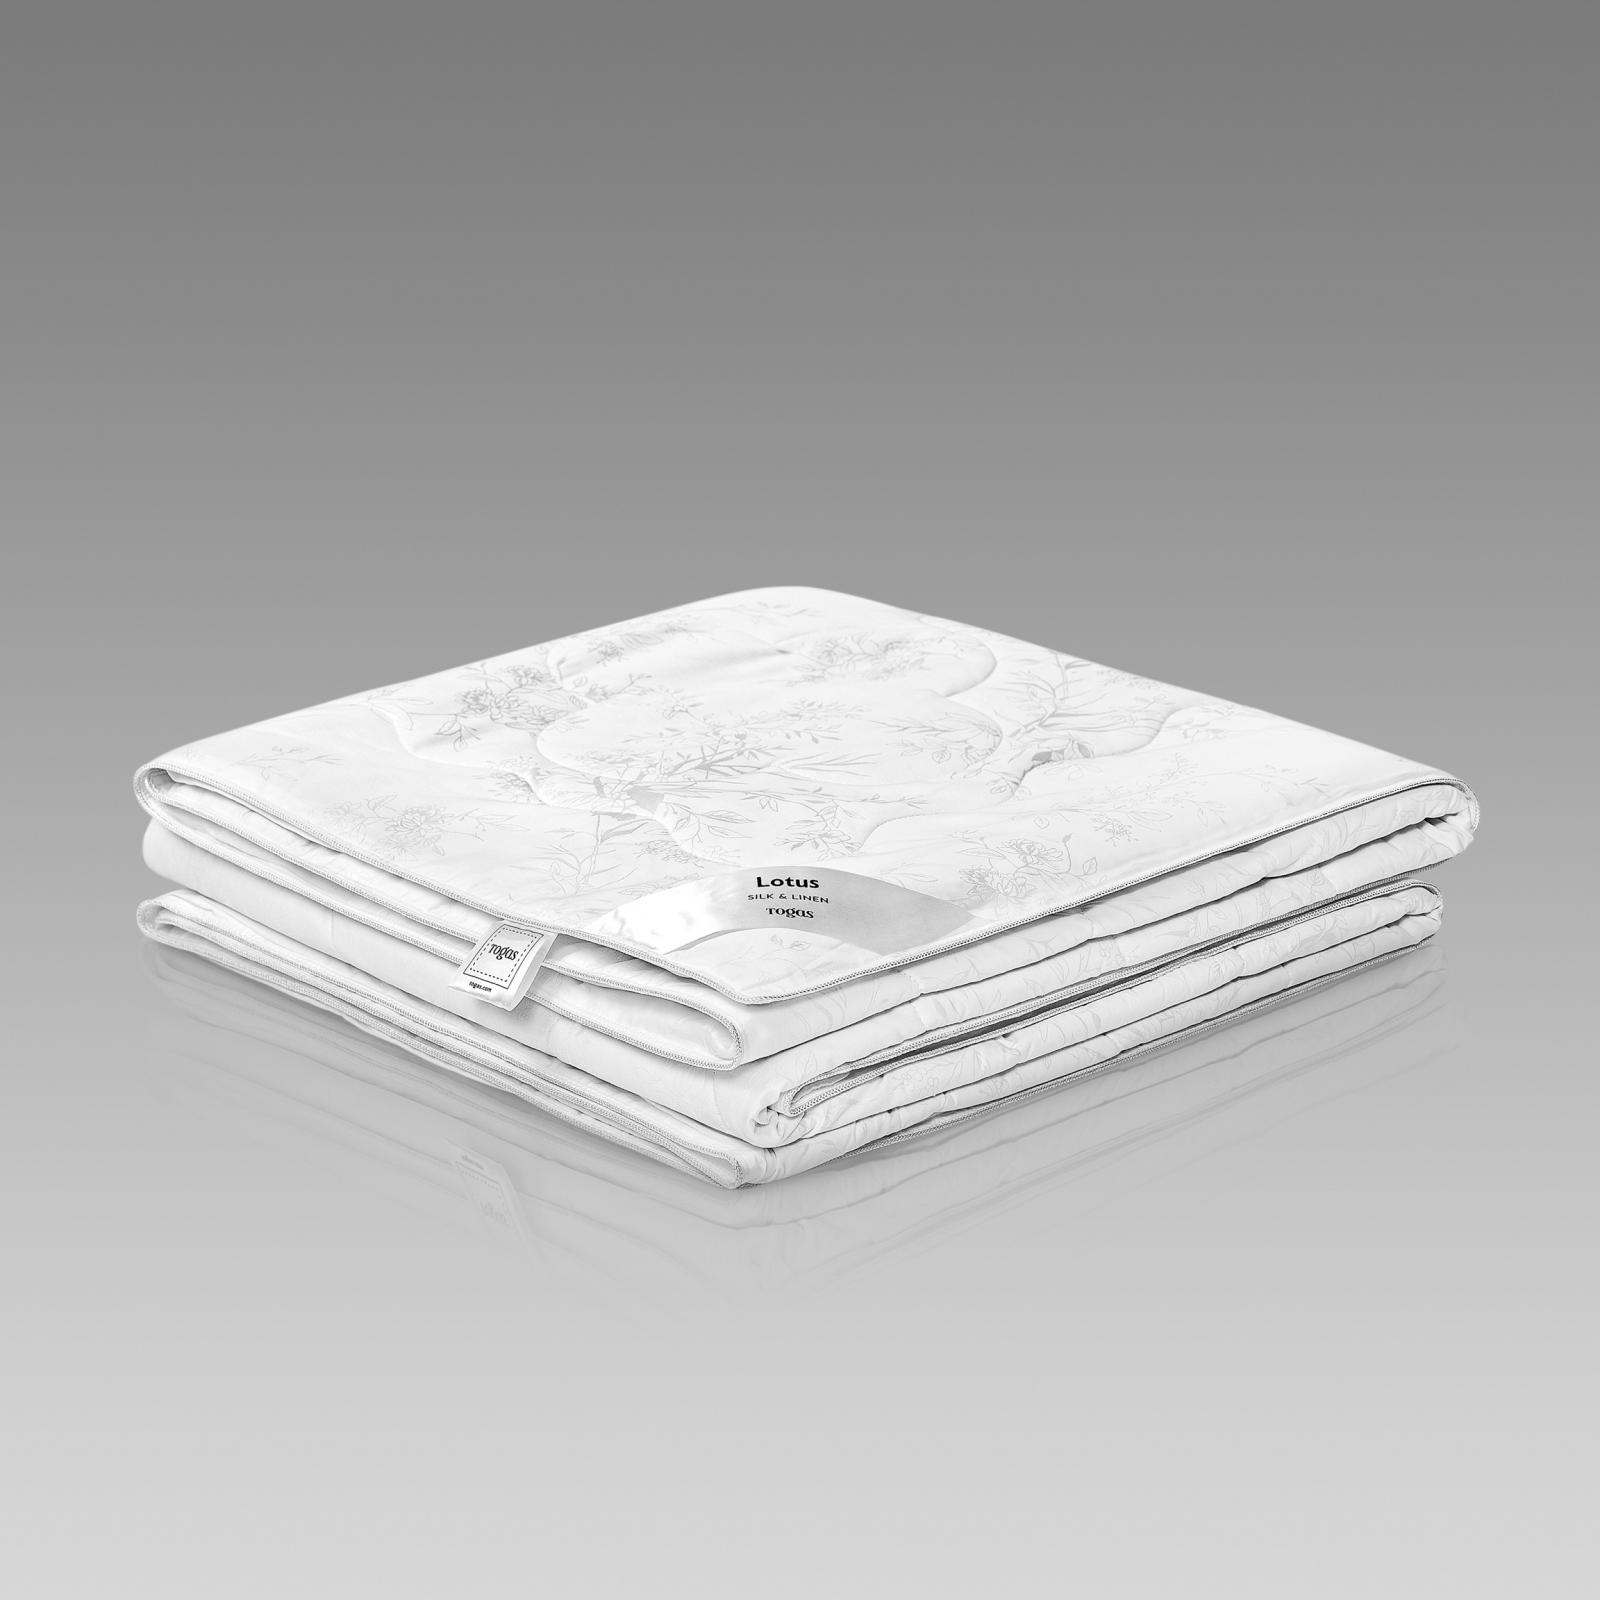 одеяло togas лотос белое 140х200 см 20 04 29 0003 Одеяло Togas Лотос белое 140х200 см (20.04.29.0003)